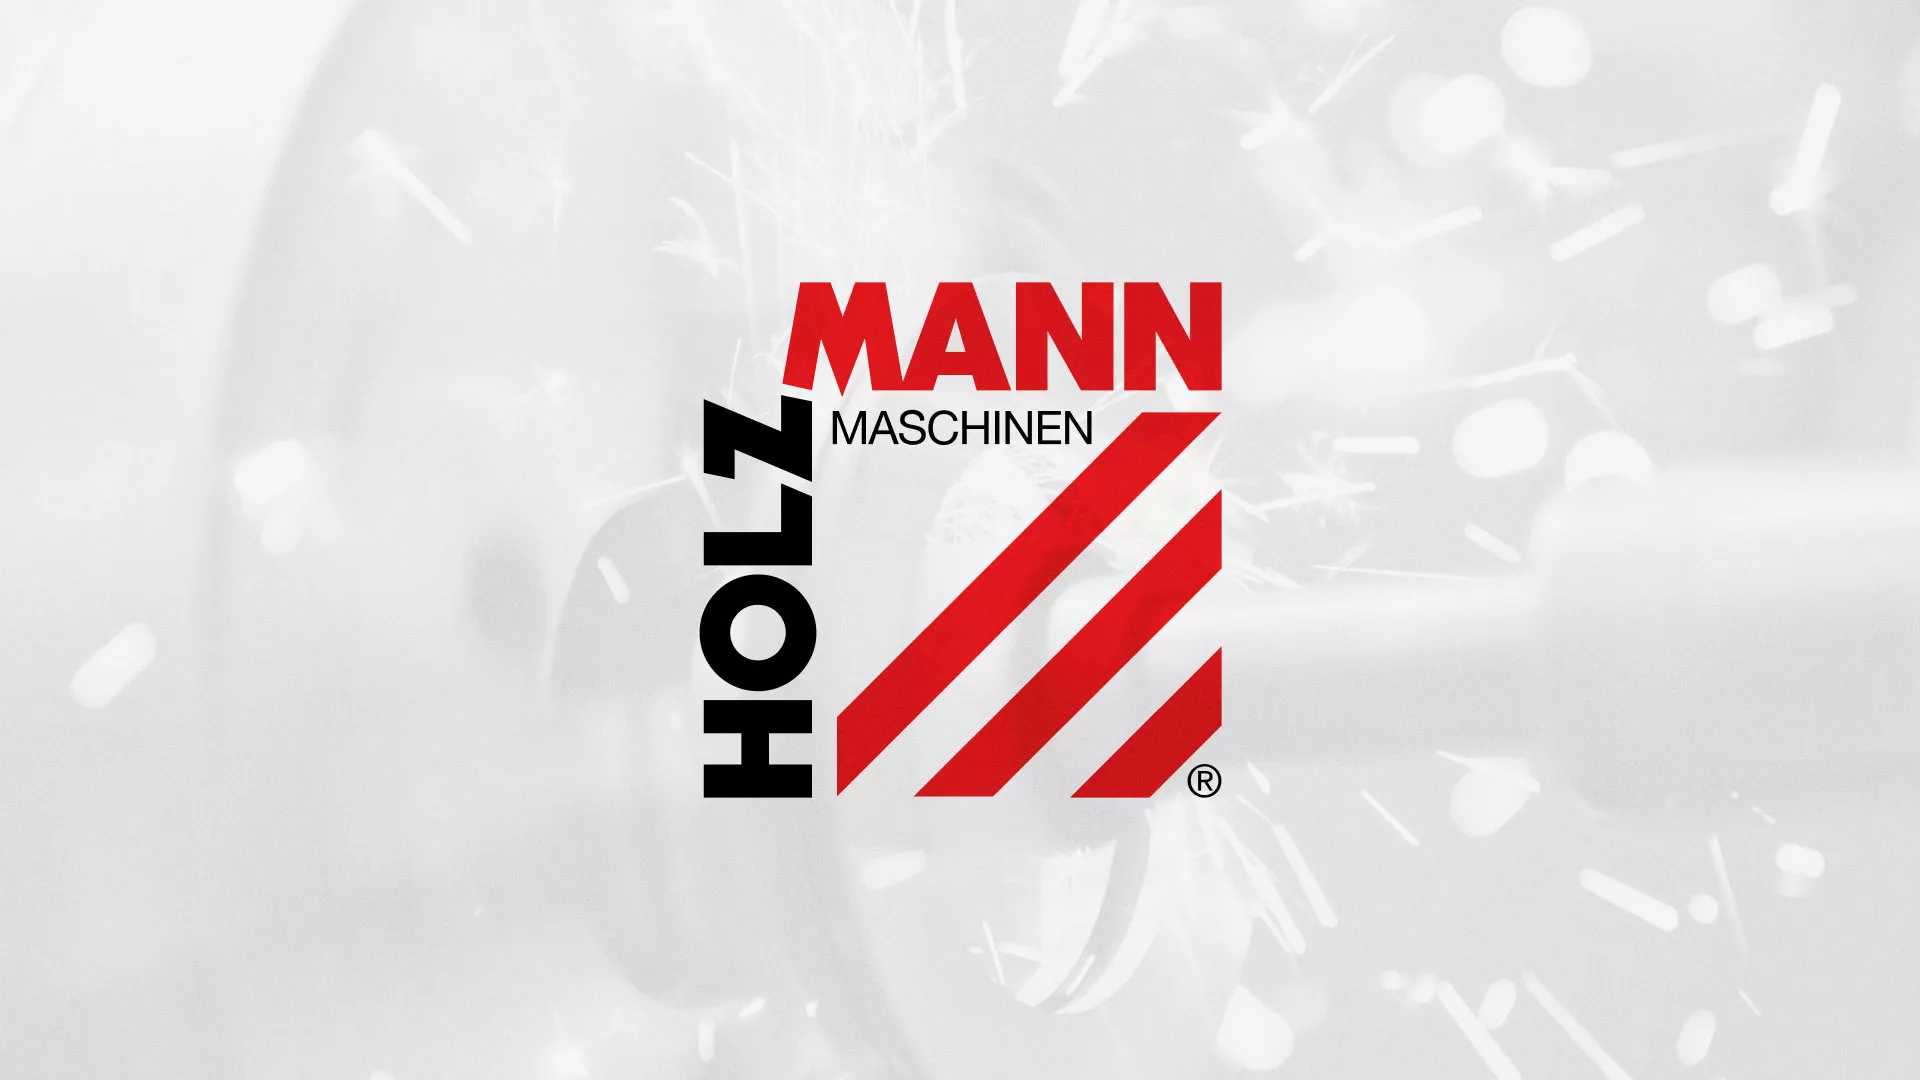 Создание сайта компании «HOLZMANN Maschinen GmbH» в Кирове